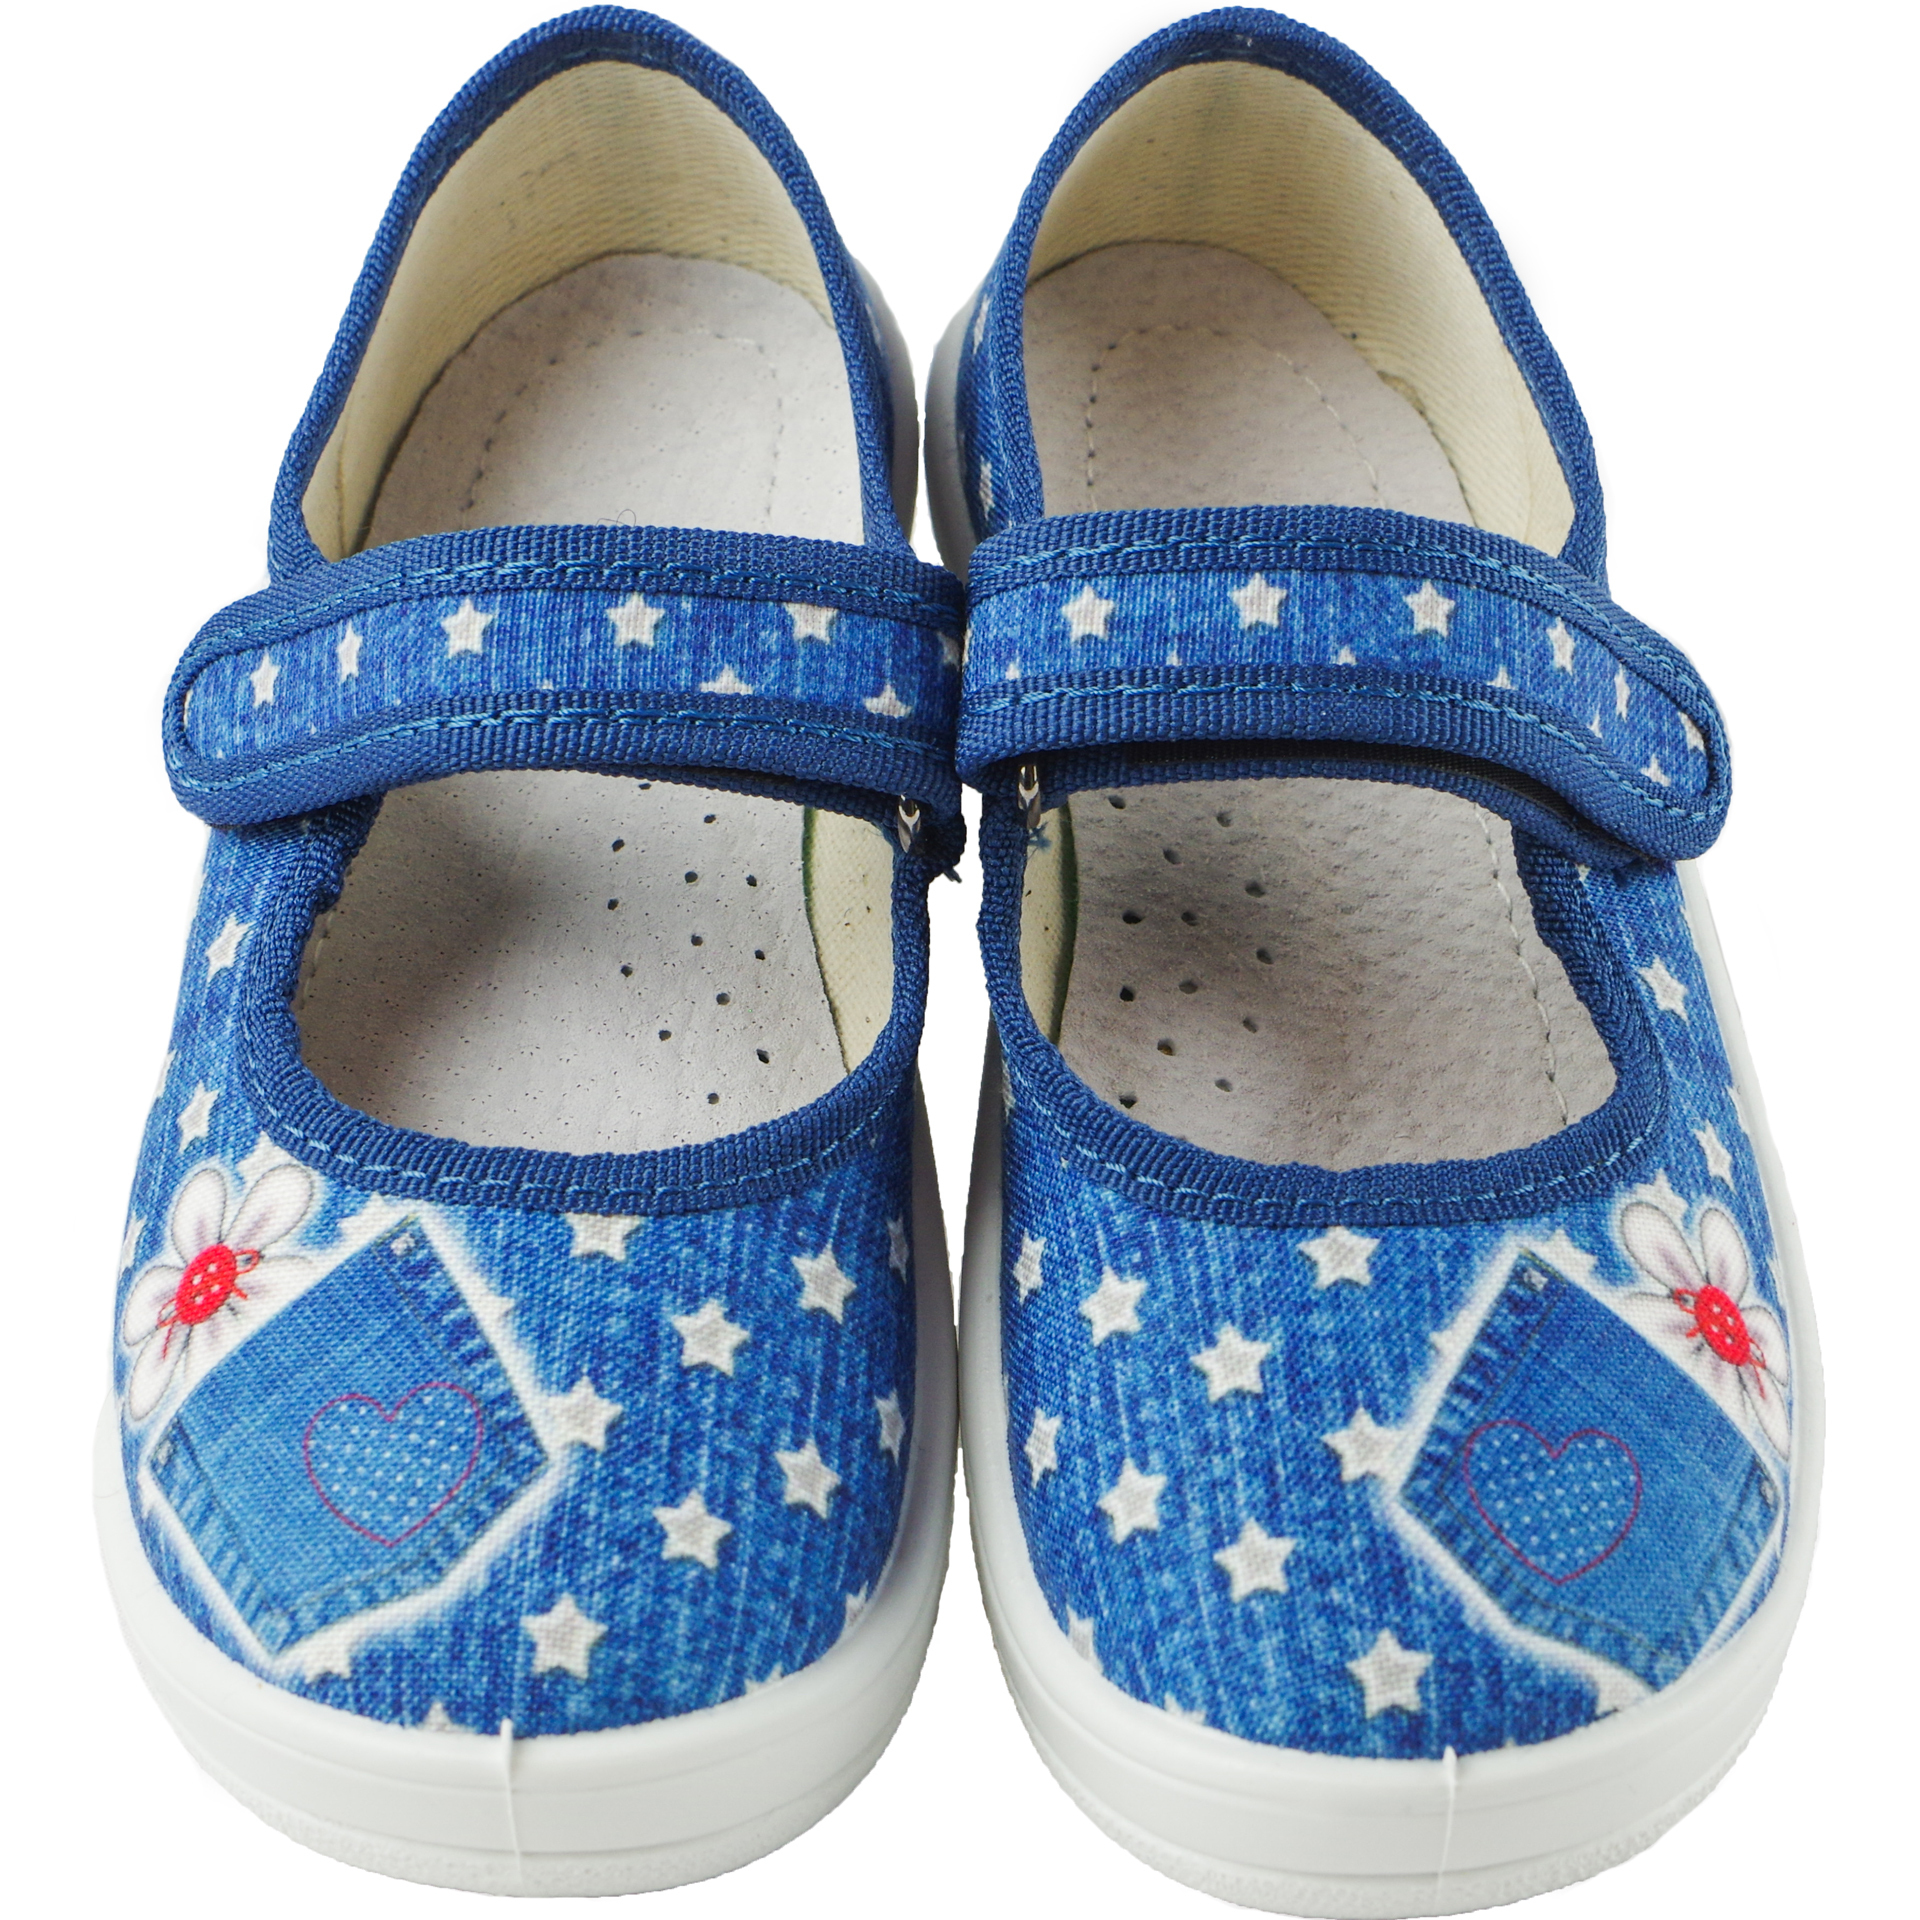 Текстильная обувь для девочек Тапочки Алина (1877) цвет Синий 24-30 размеры – Sole Kids. Фото 4